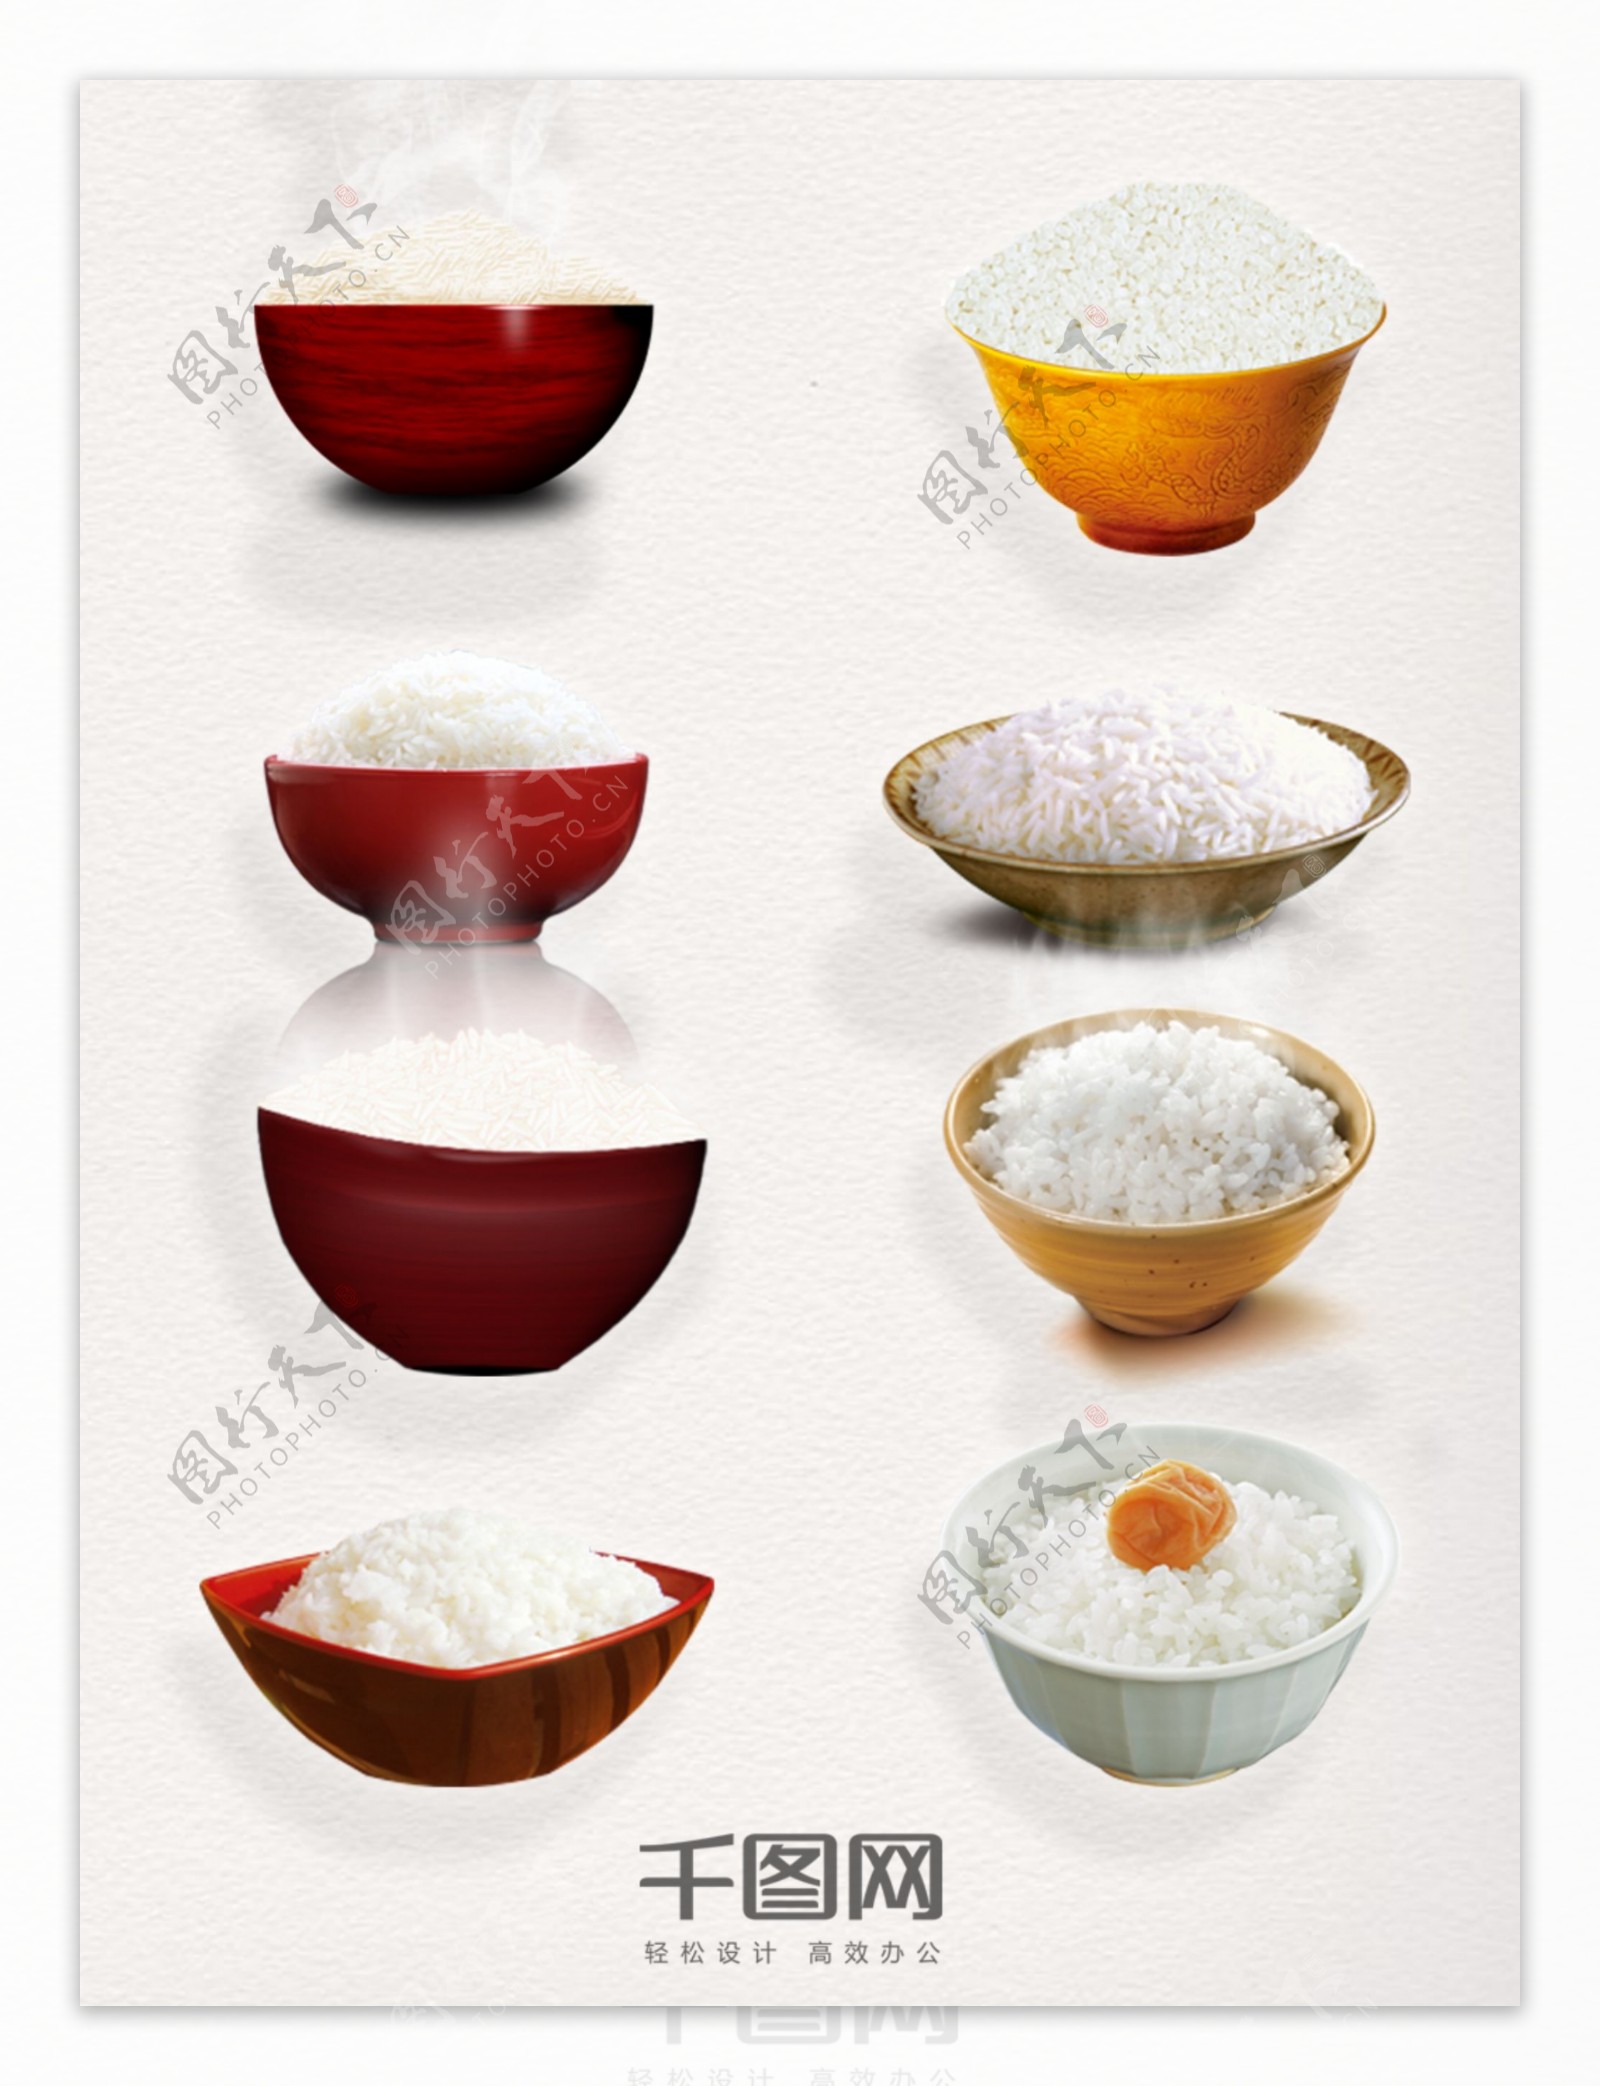 米饭元素装饰图案集合